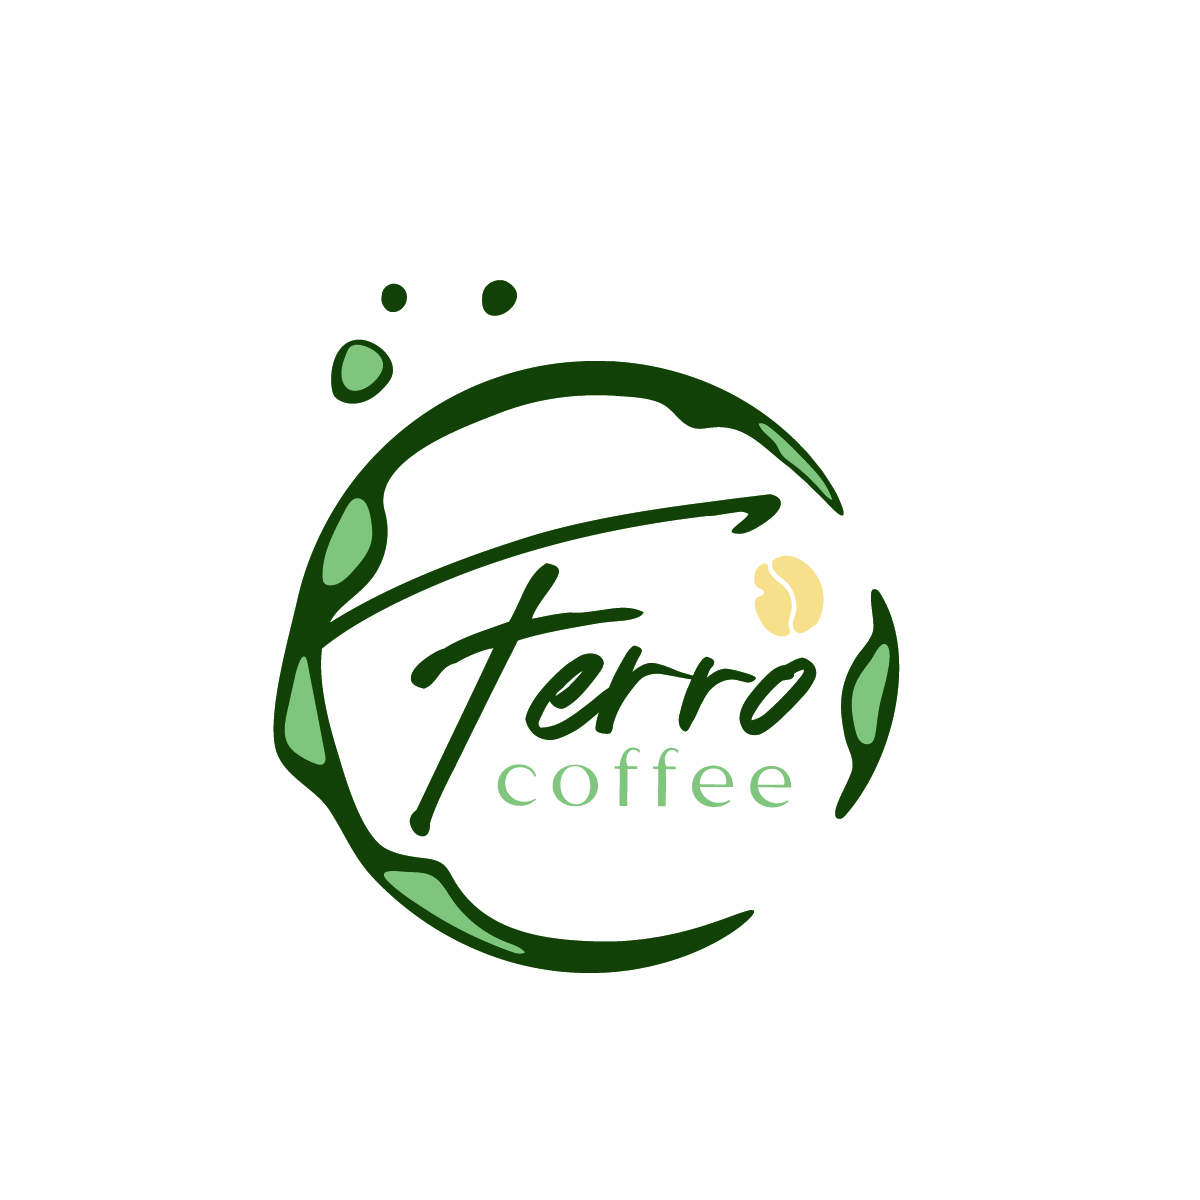 Ferro_Coffee_Final.jpg